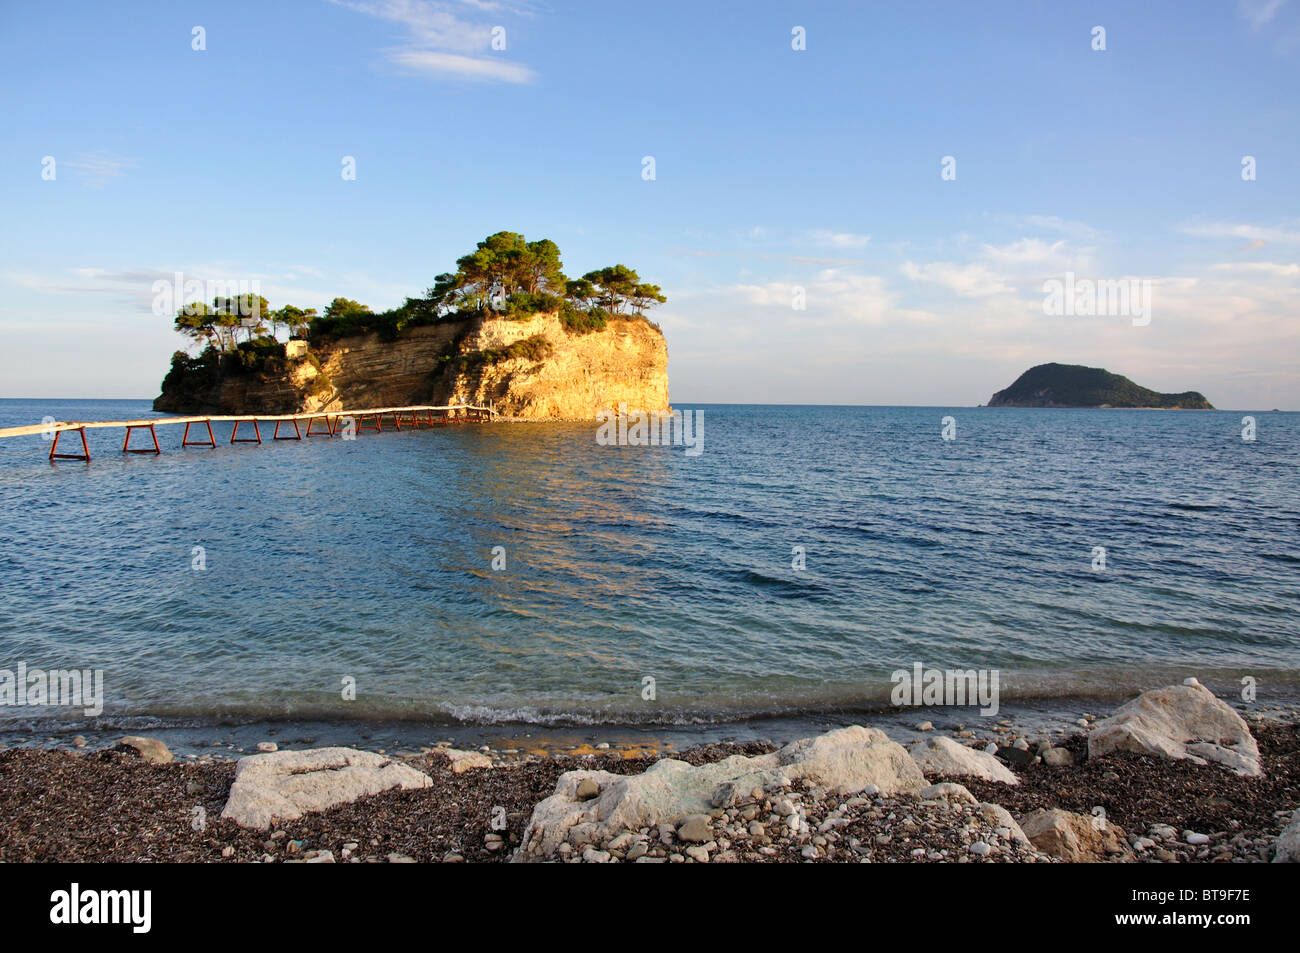 L'île d''Agios Sostis et bridge au coucher du soleil, Zakynthos (Zante), îles Ioniennes, Grèce Banque D'Images